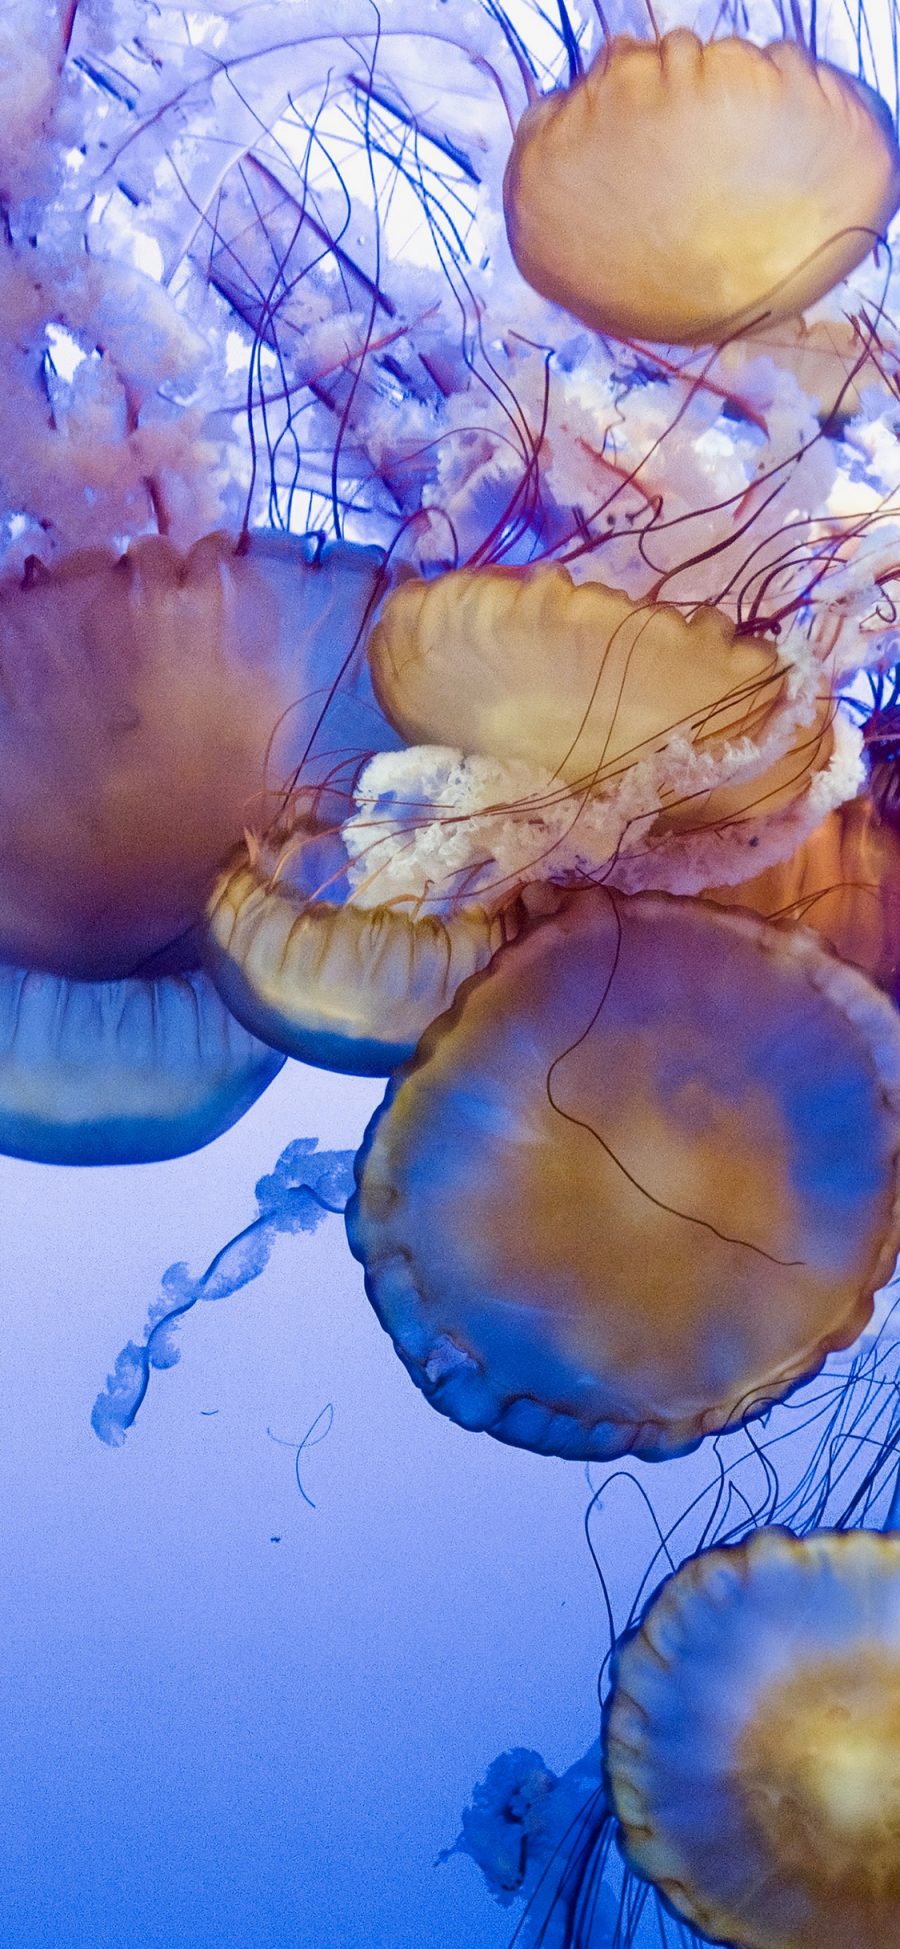 [2436×1125]海洋生物 密集 水母 浮游 苹果手机壁纸图片